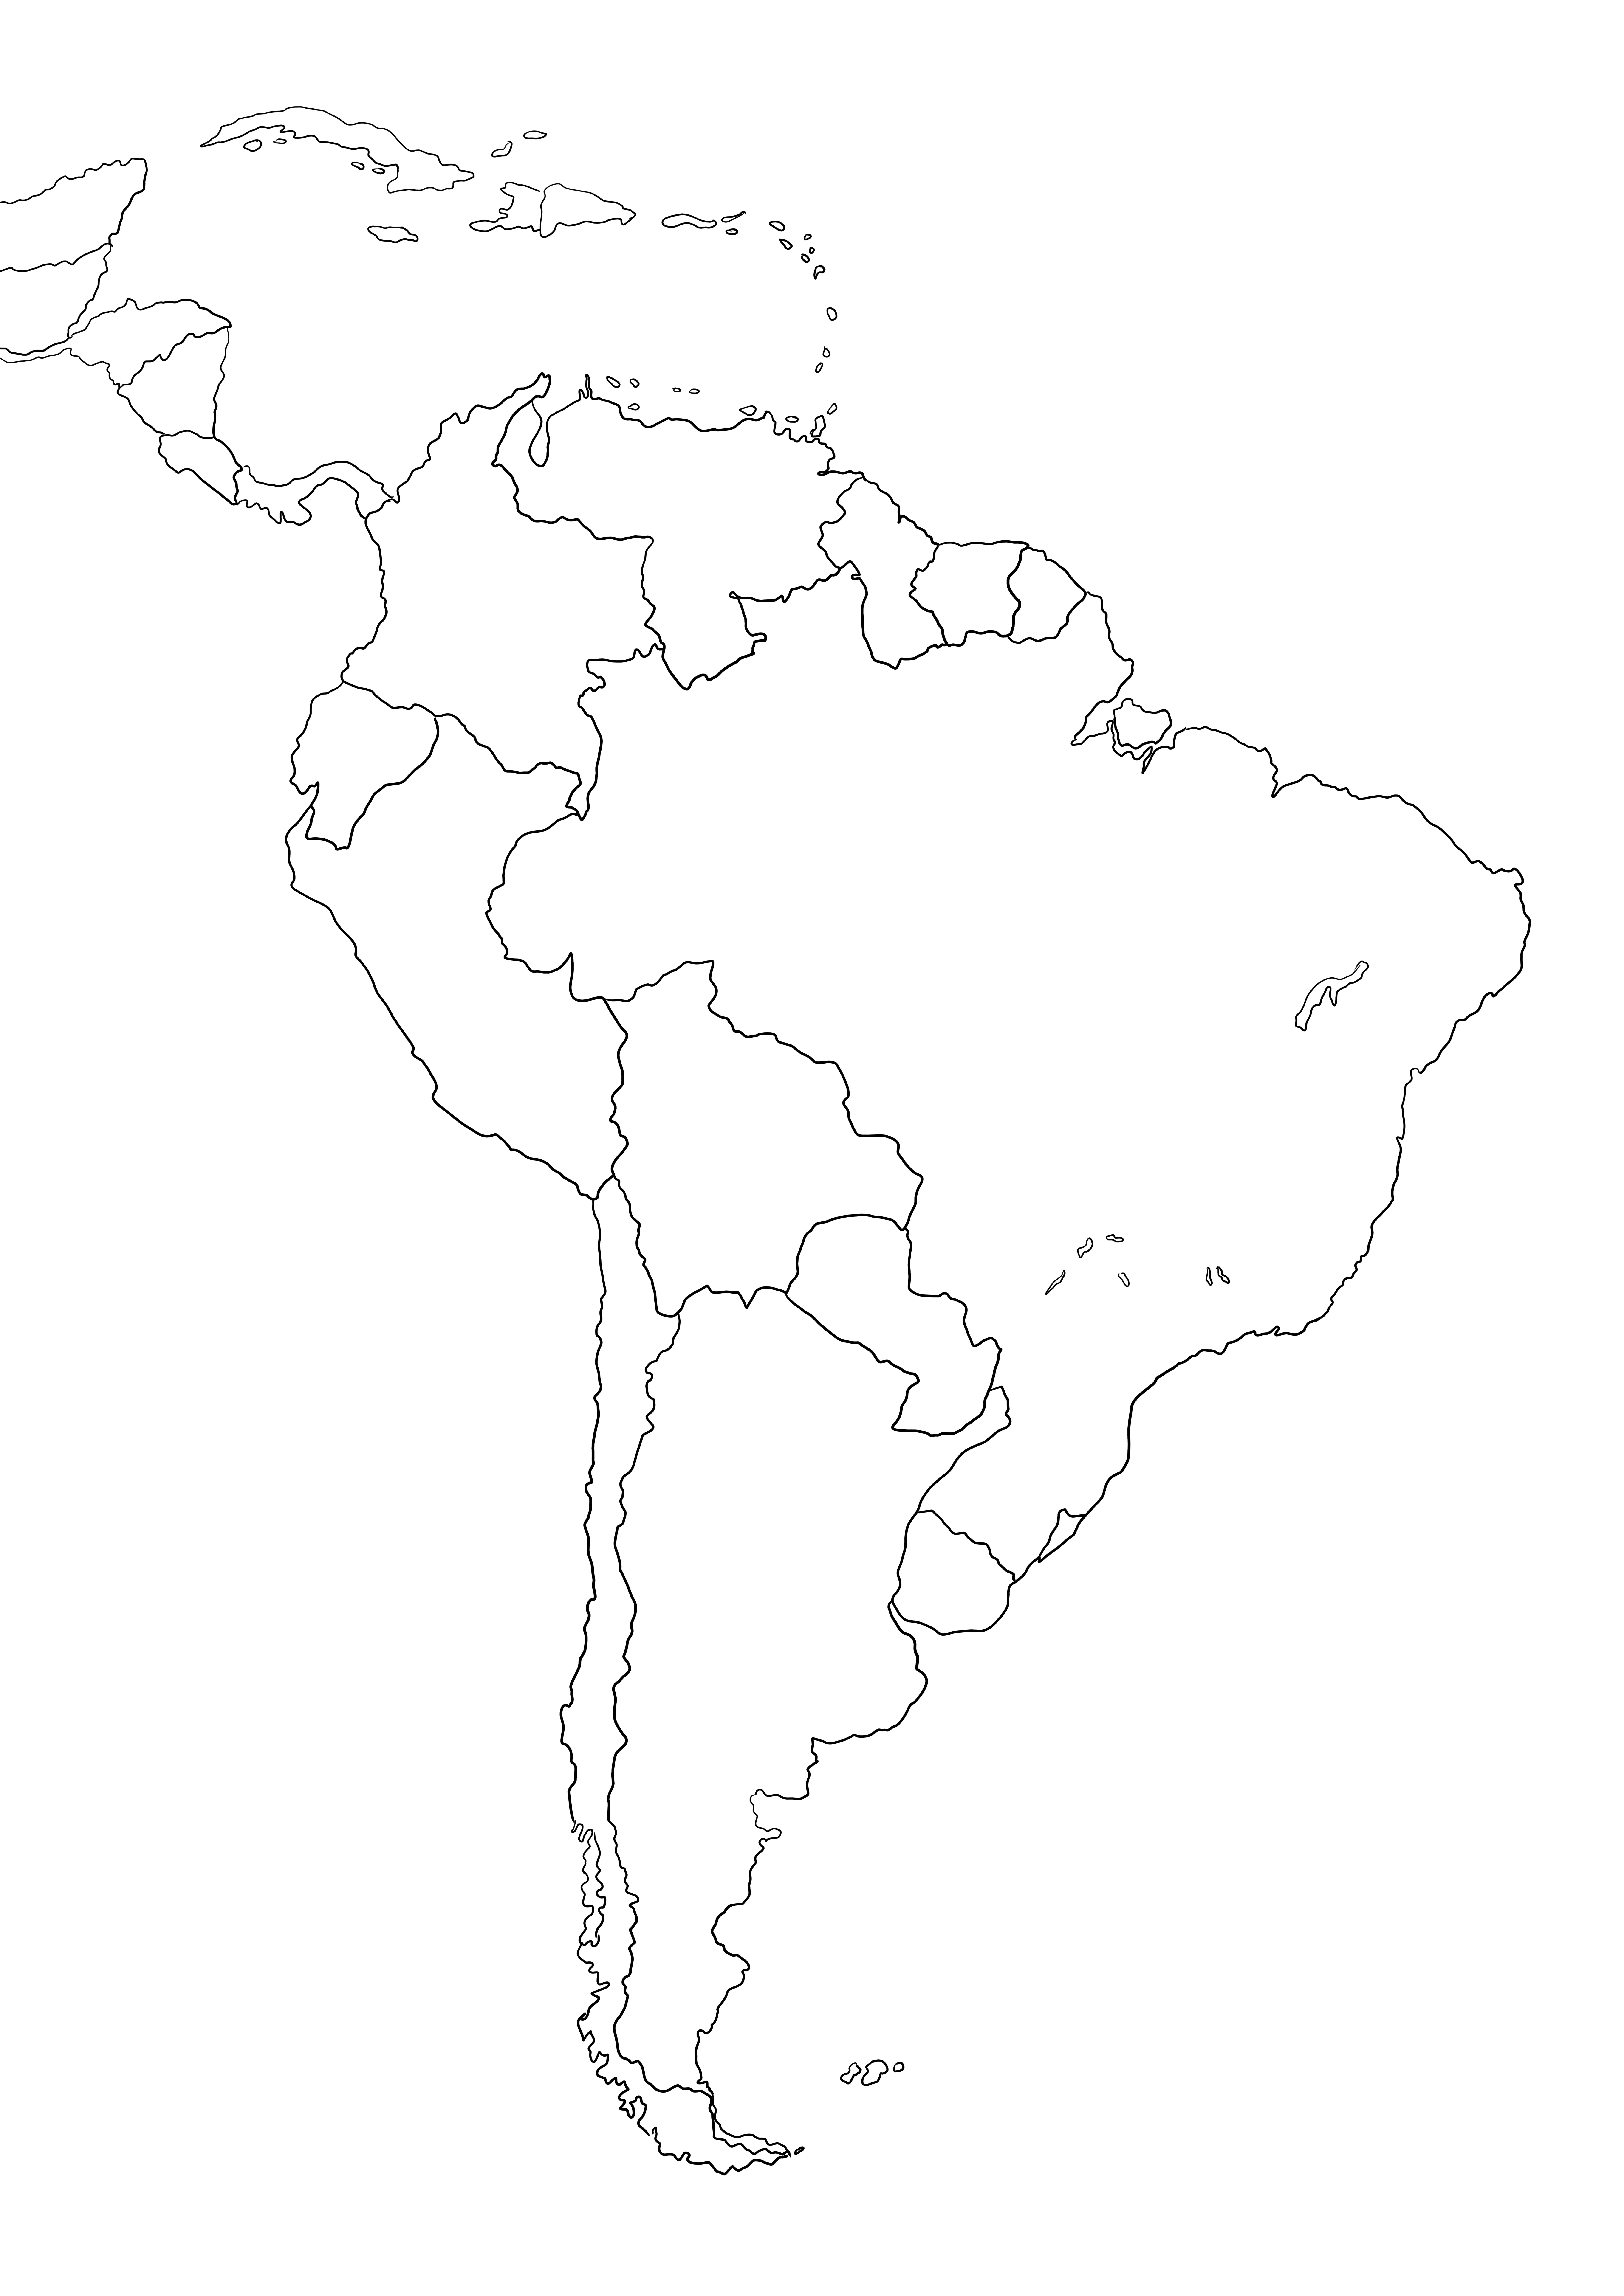 Freebie Peta Amerika Selatan untuk diwarnai atau disimpan untuk nanti